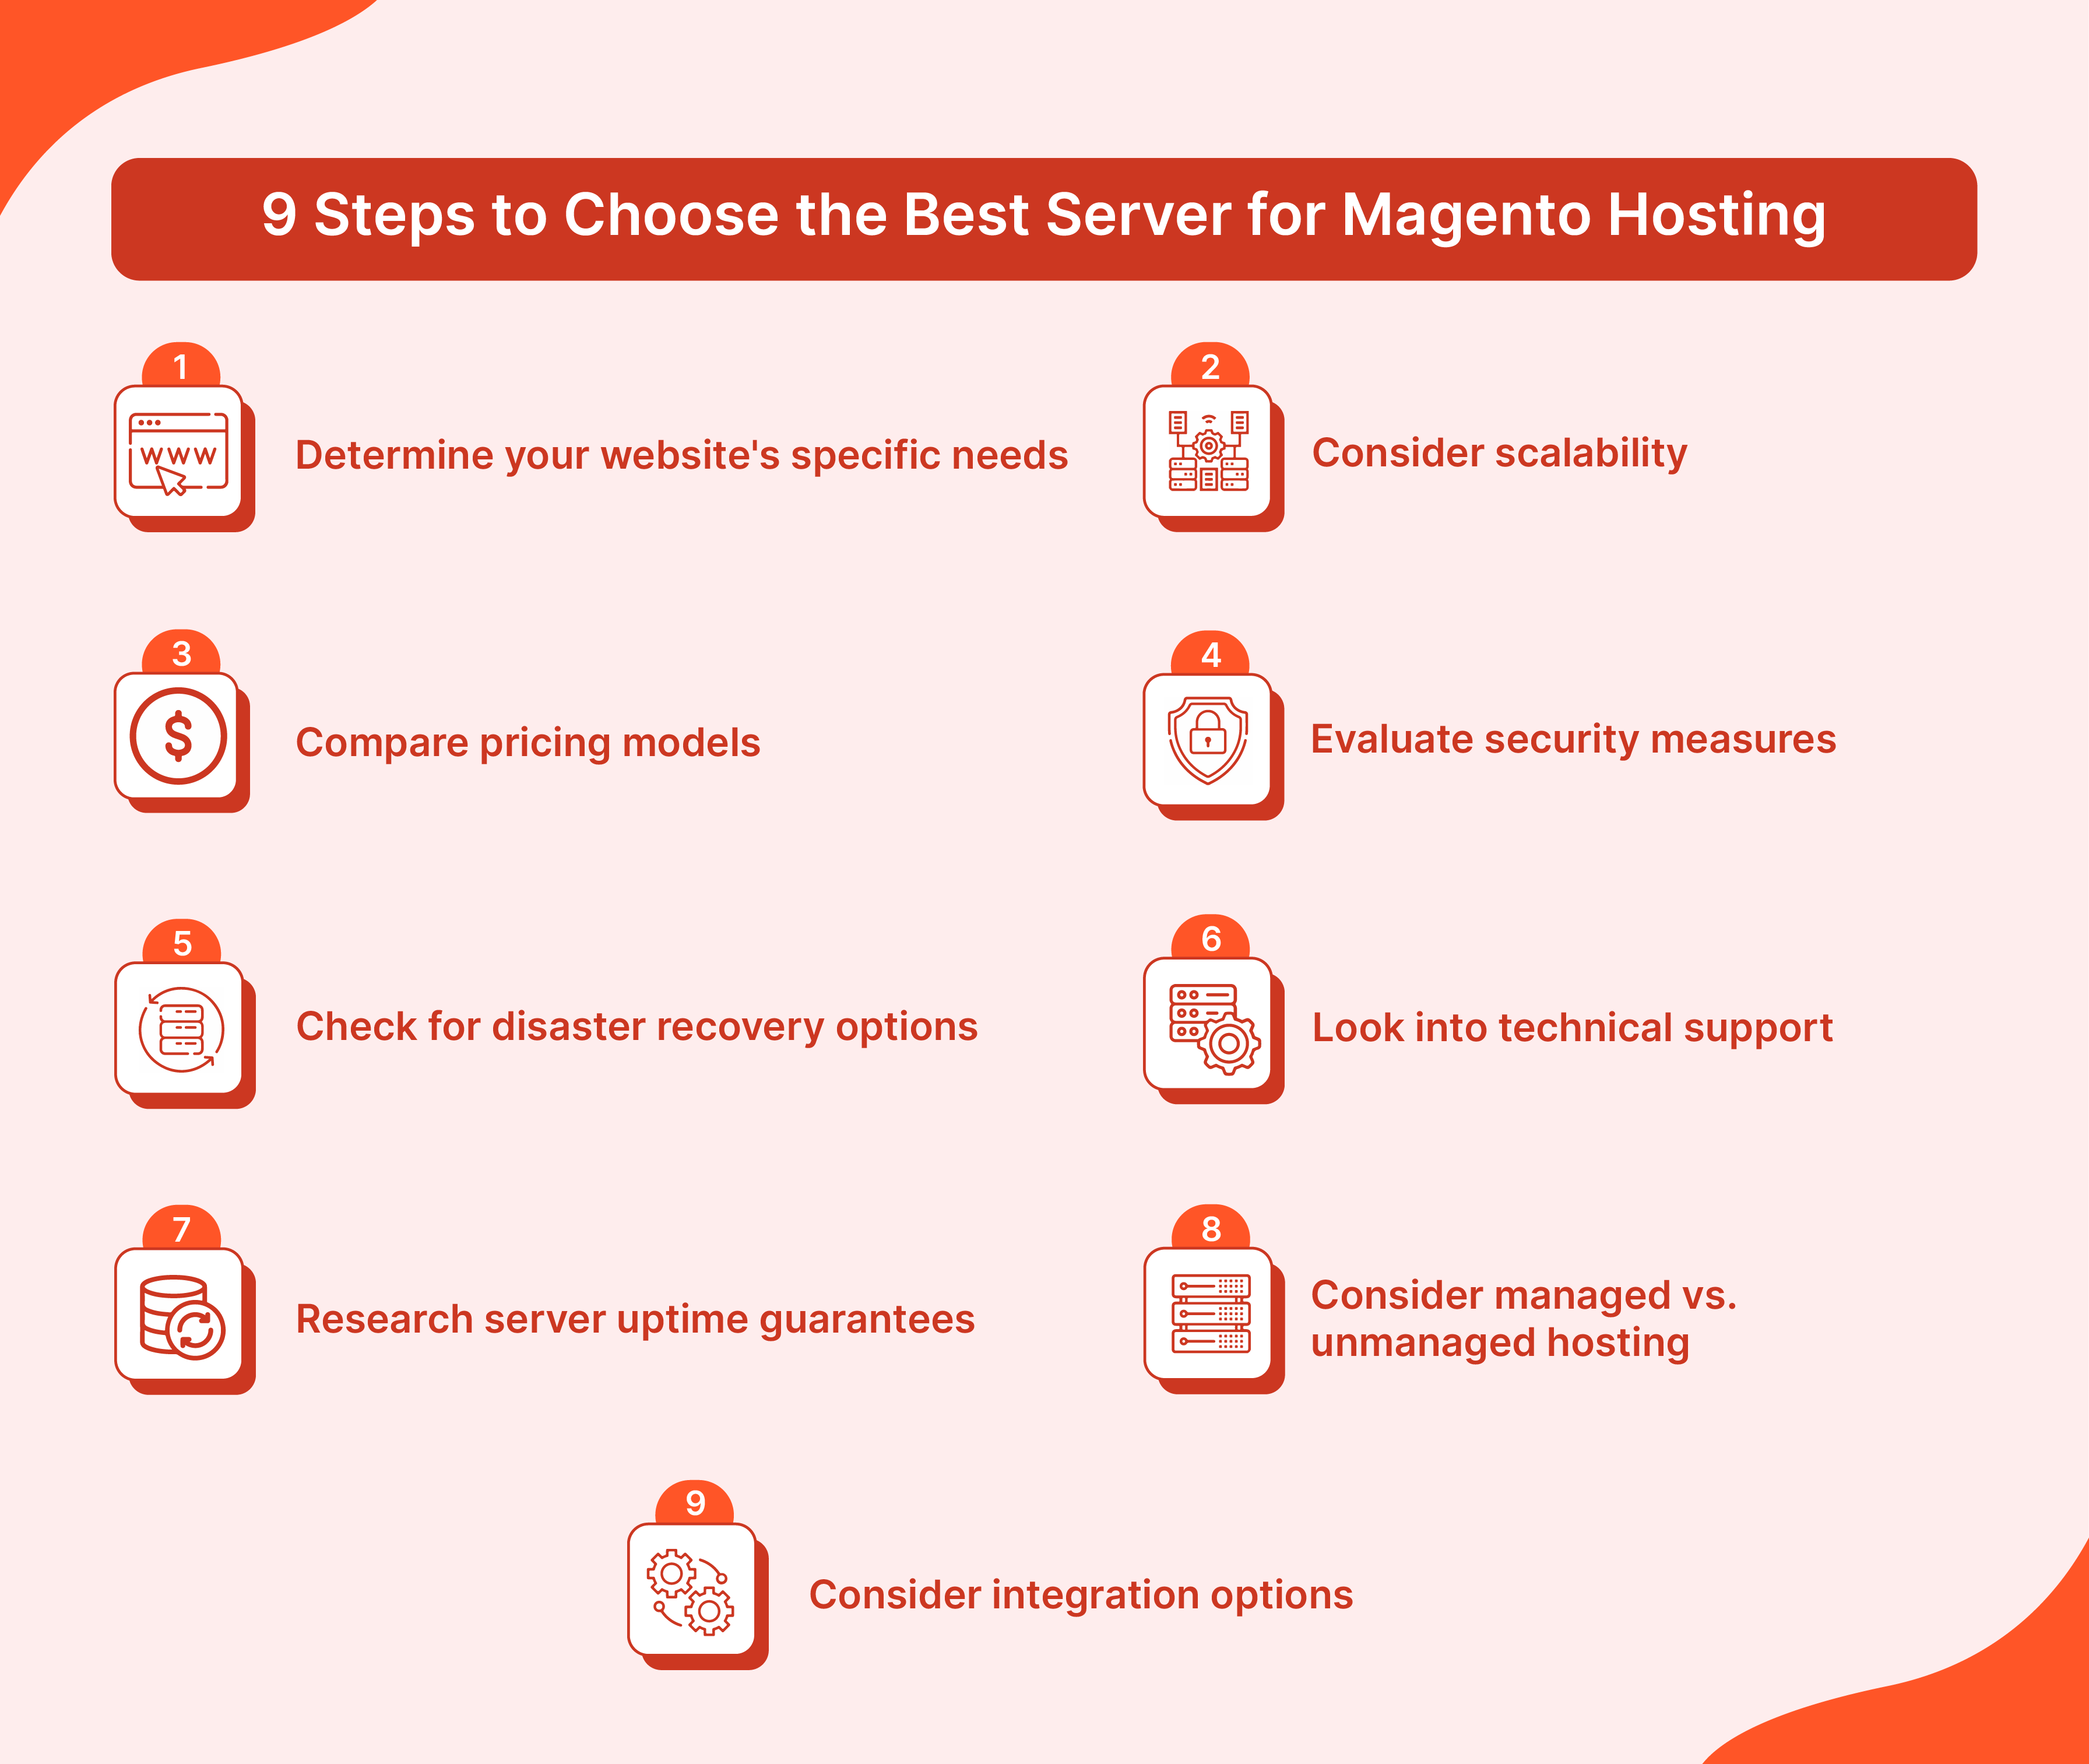 Steps of Choosing Best Server for Magento Hosting